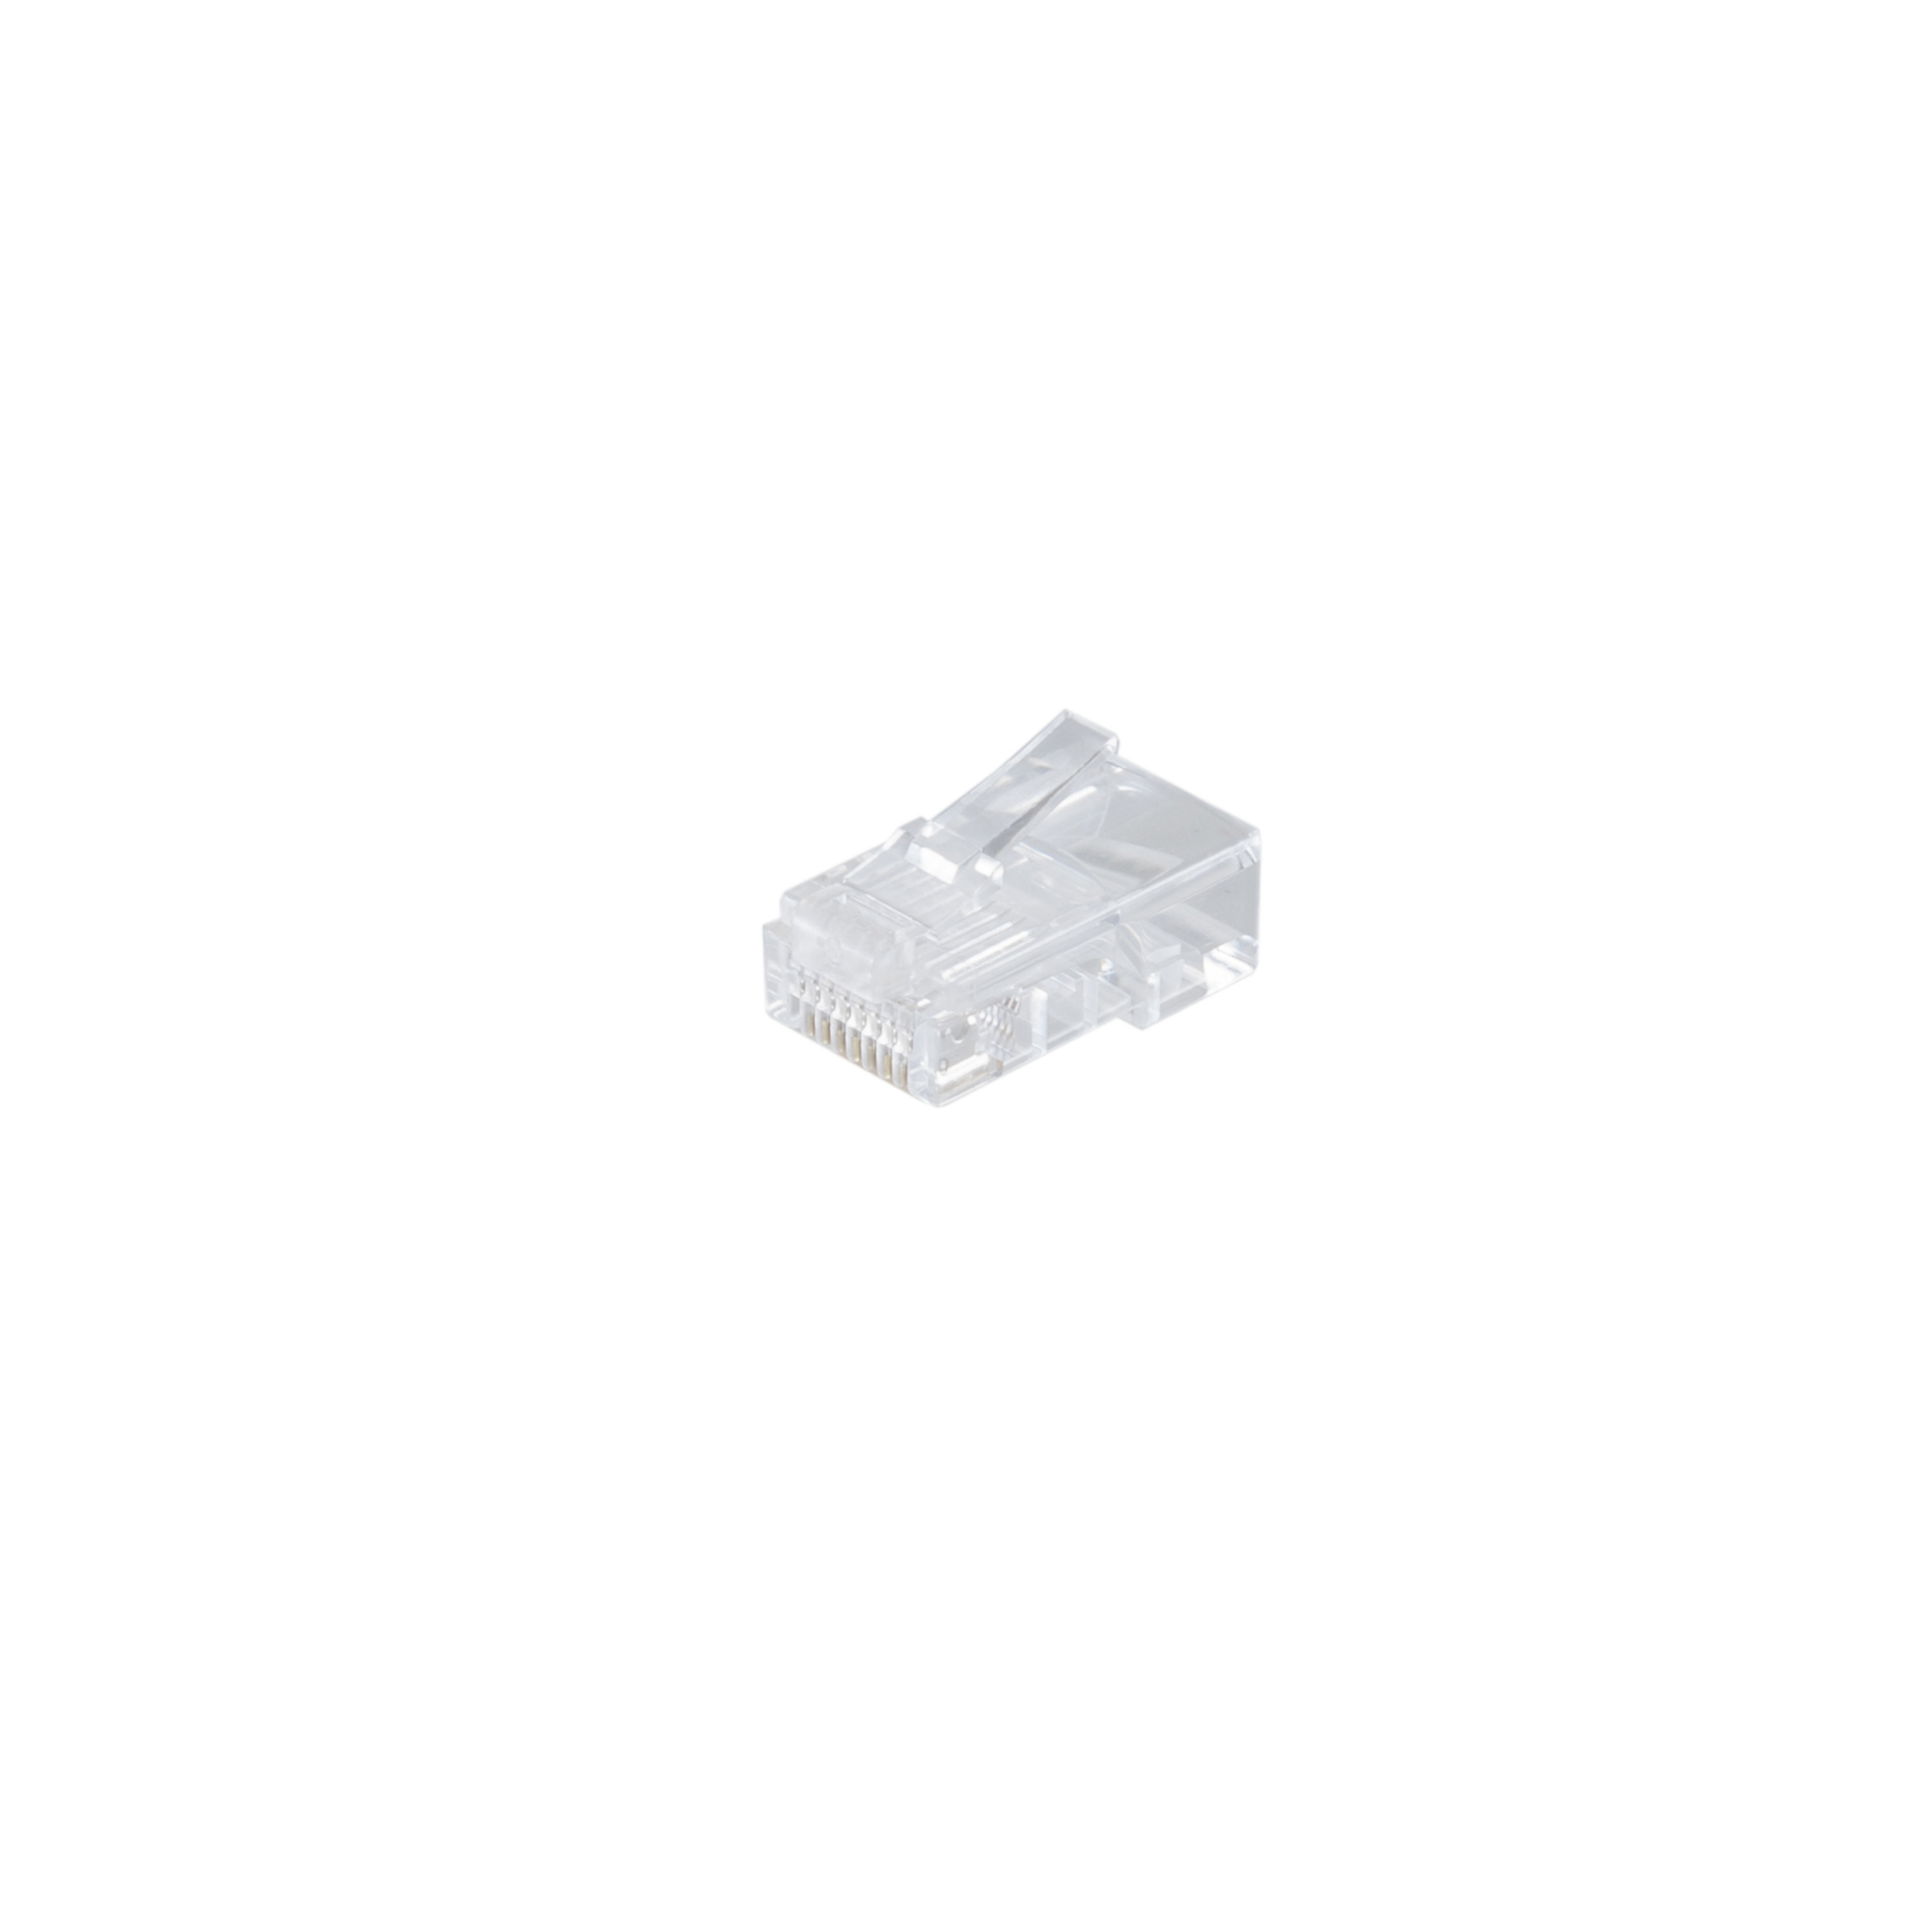 S/CONN Modular Adapter Stecker transparent für verg. 8polig short MAXIMUM ISDN Rundkabel CONNECTIVITY